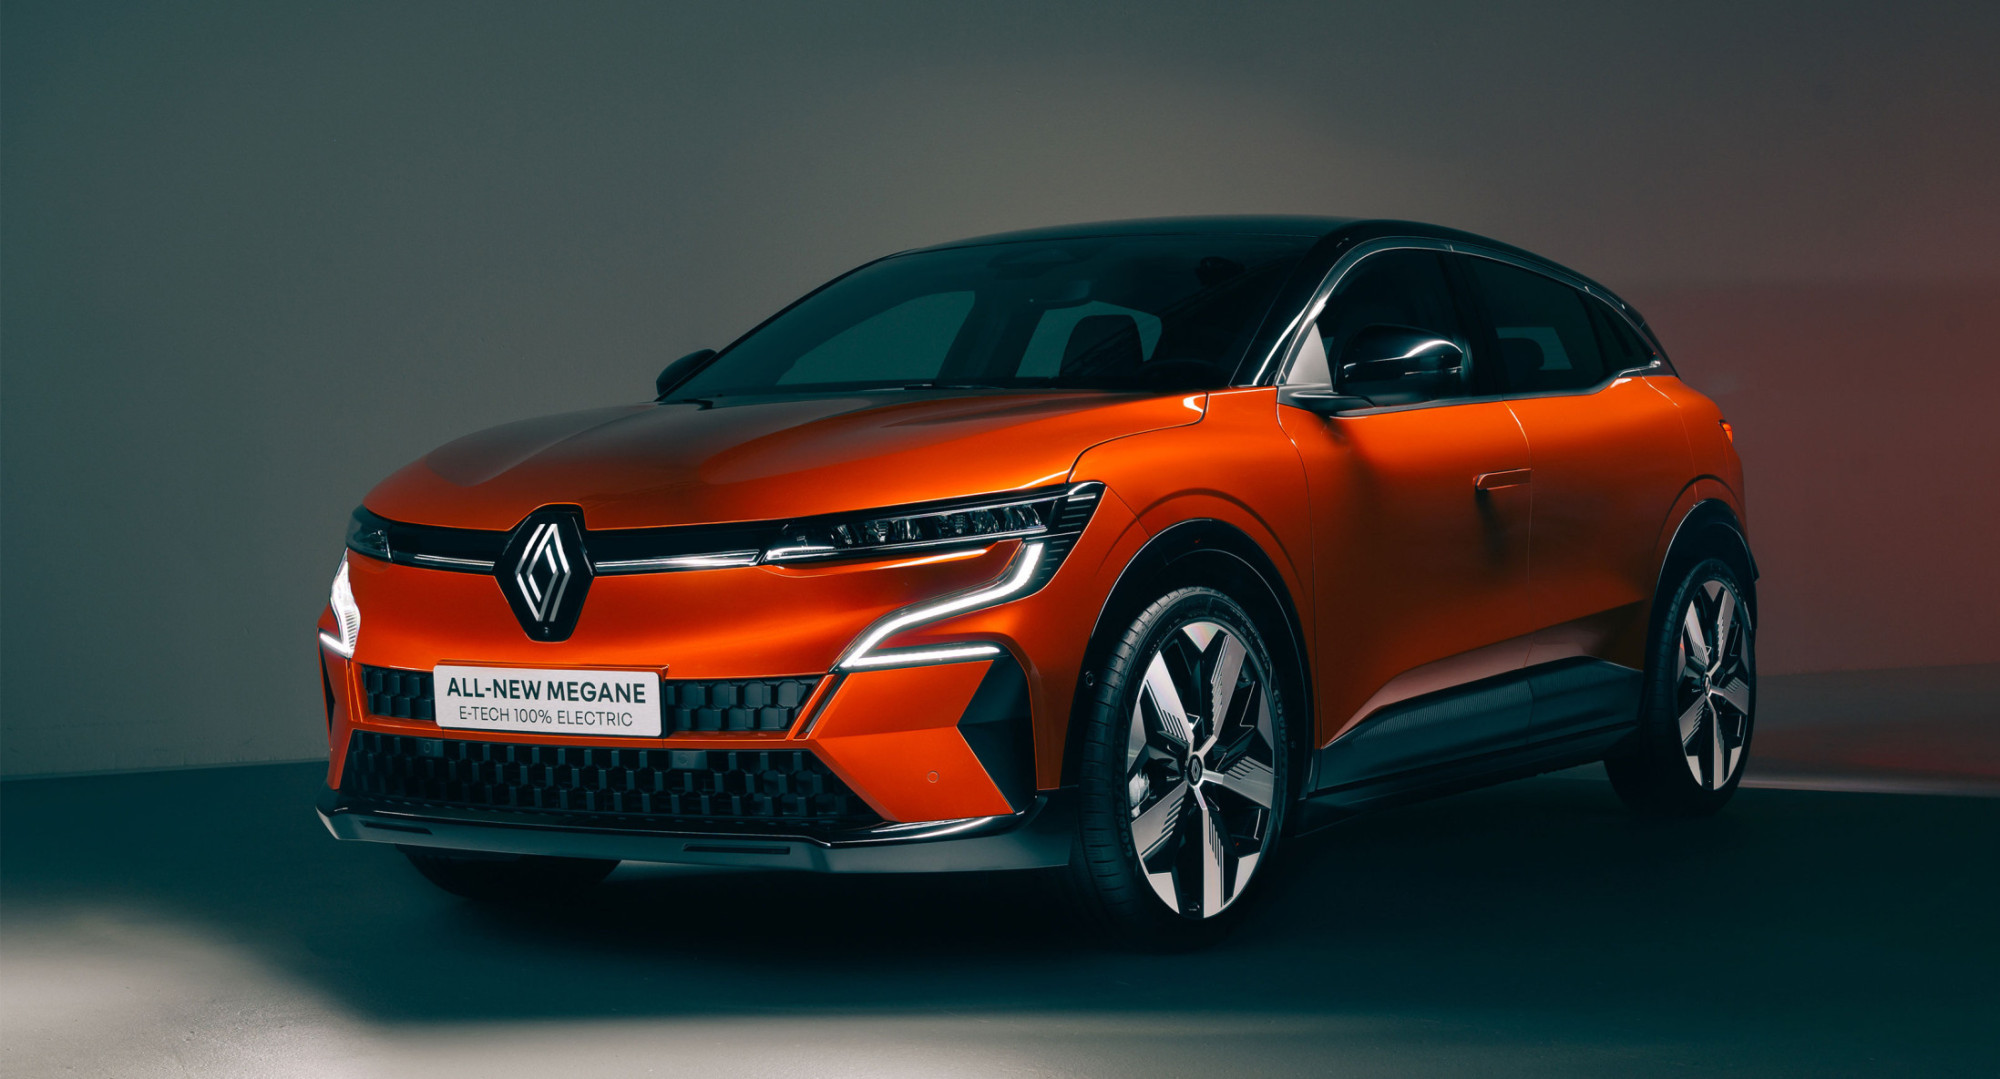 Automobile : Renault Megane E-Tech, électrique et stylée - The